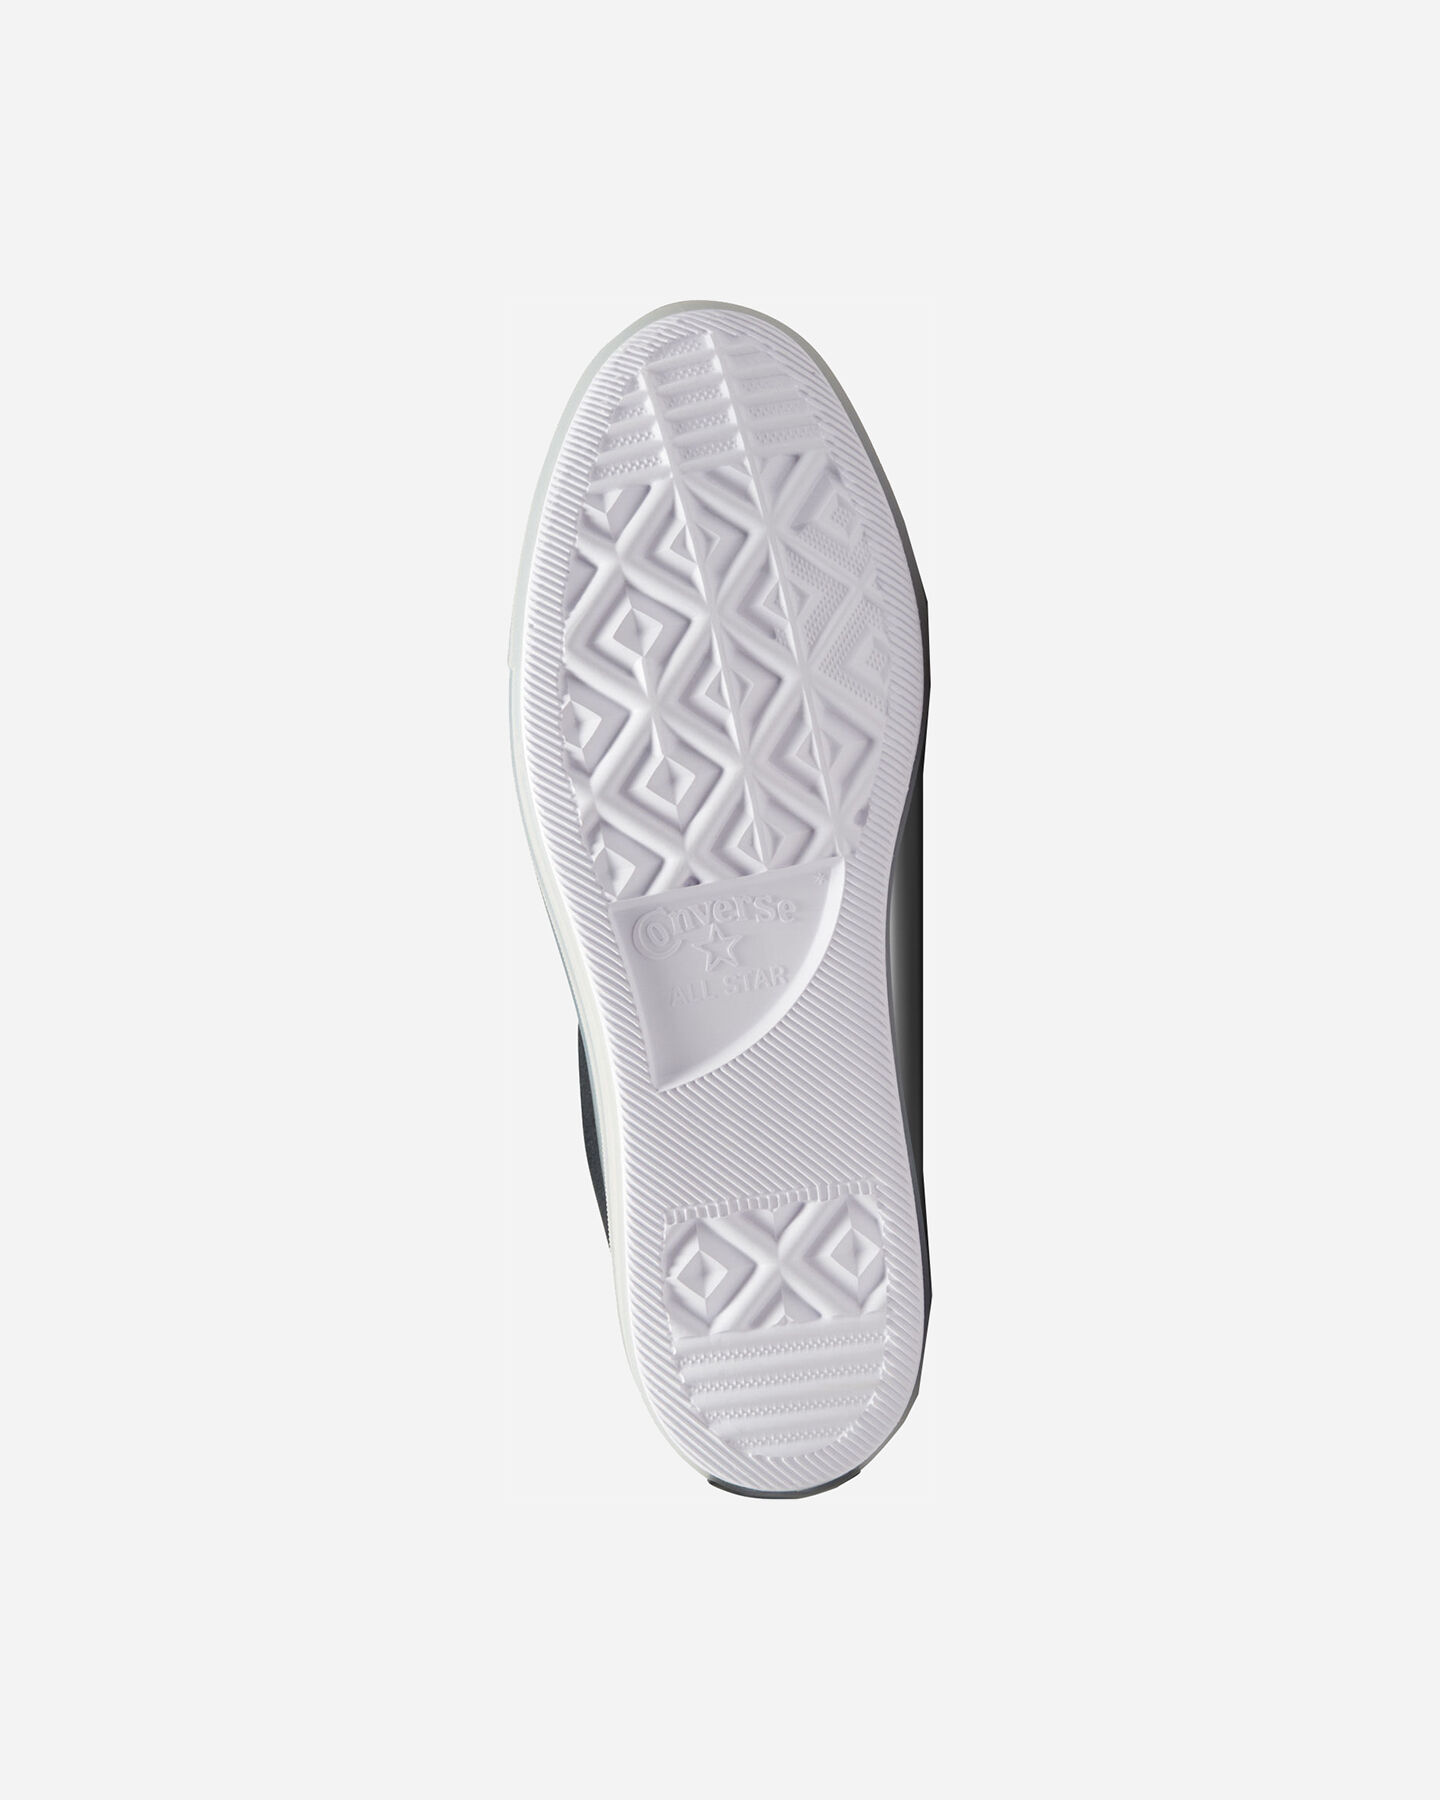  Scarpe sneakers CONVERSE CHUCK TAYLOR ALL STAR CX M S5471718|001|4 scatto 2